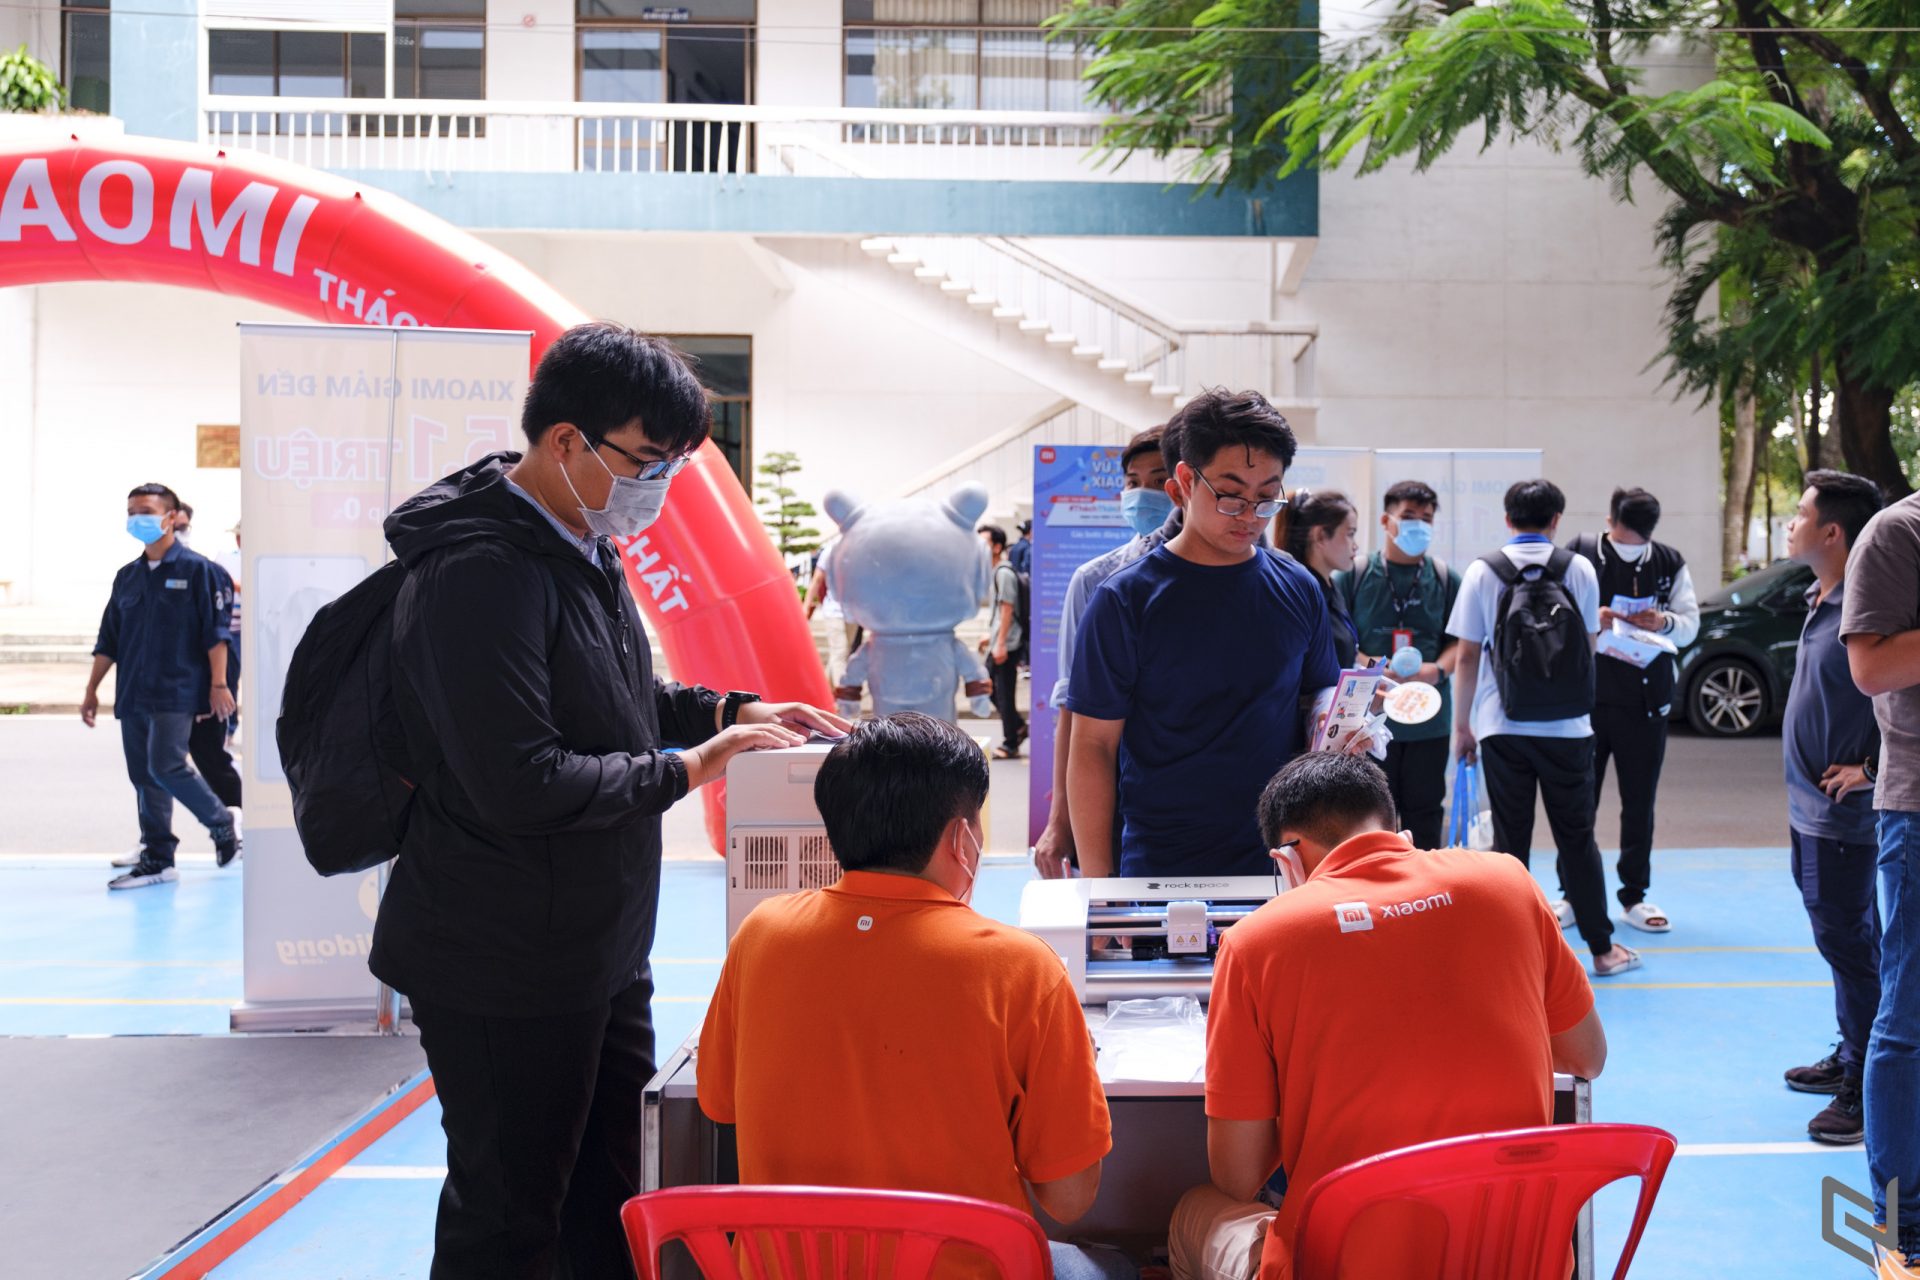 Khám phá "Vũ Trụ Xiaomi" với chuỗi hoạt động trải nghiệm trên 20 trường Đại học khắp cả nước